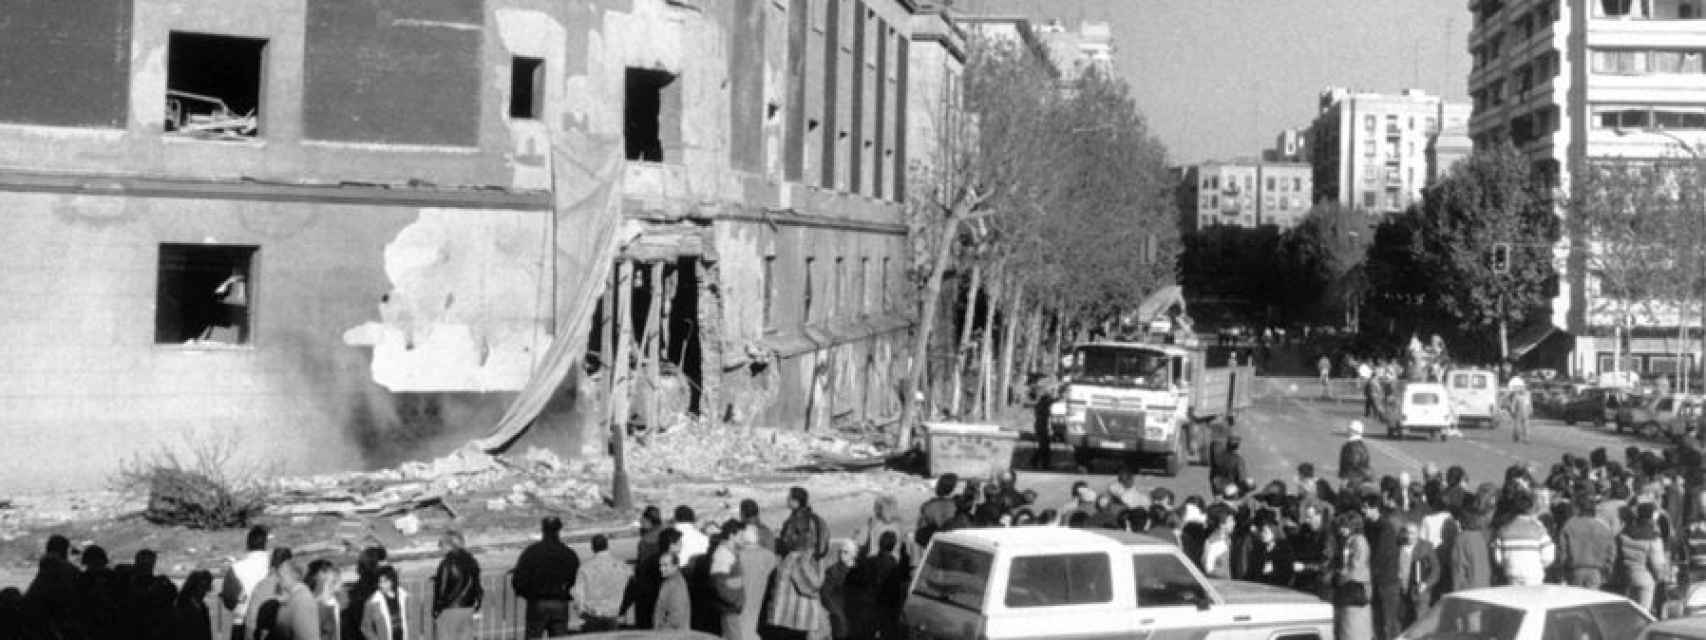 Imagen del atentado contra la Dirección General de la Guardia Civil en Madrid, en 1988.